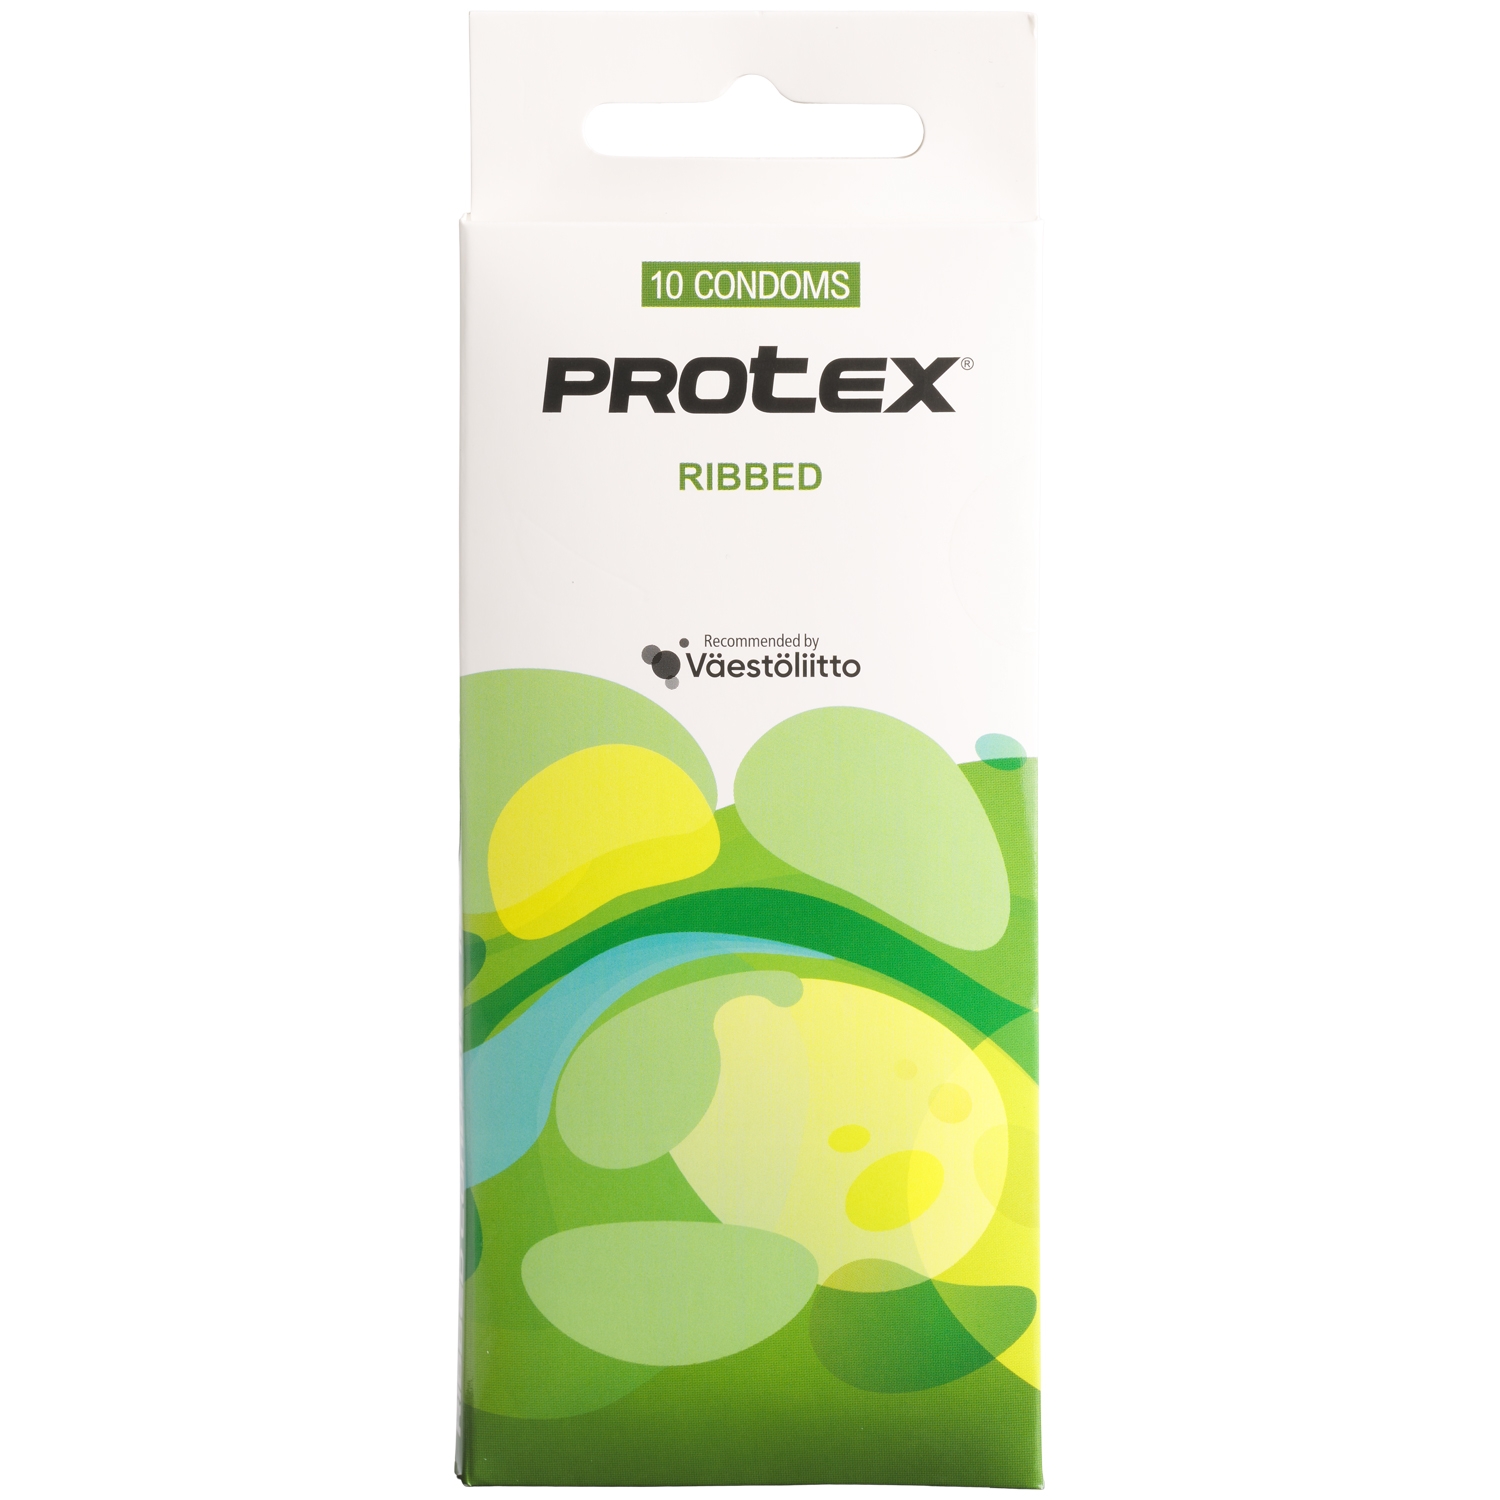 Protex Ribbed Räfflade Kondomer 10-pack - Klar